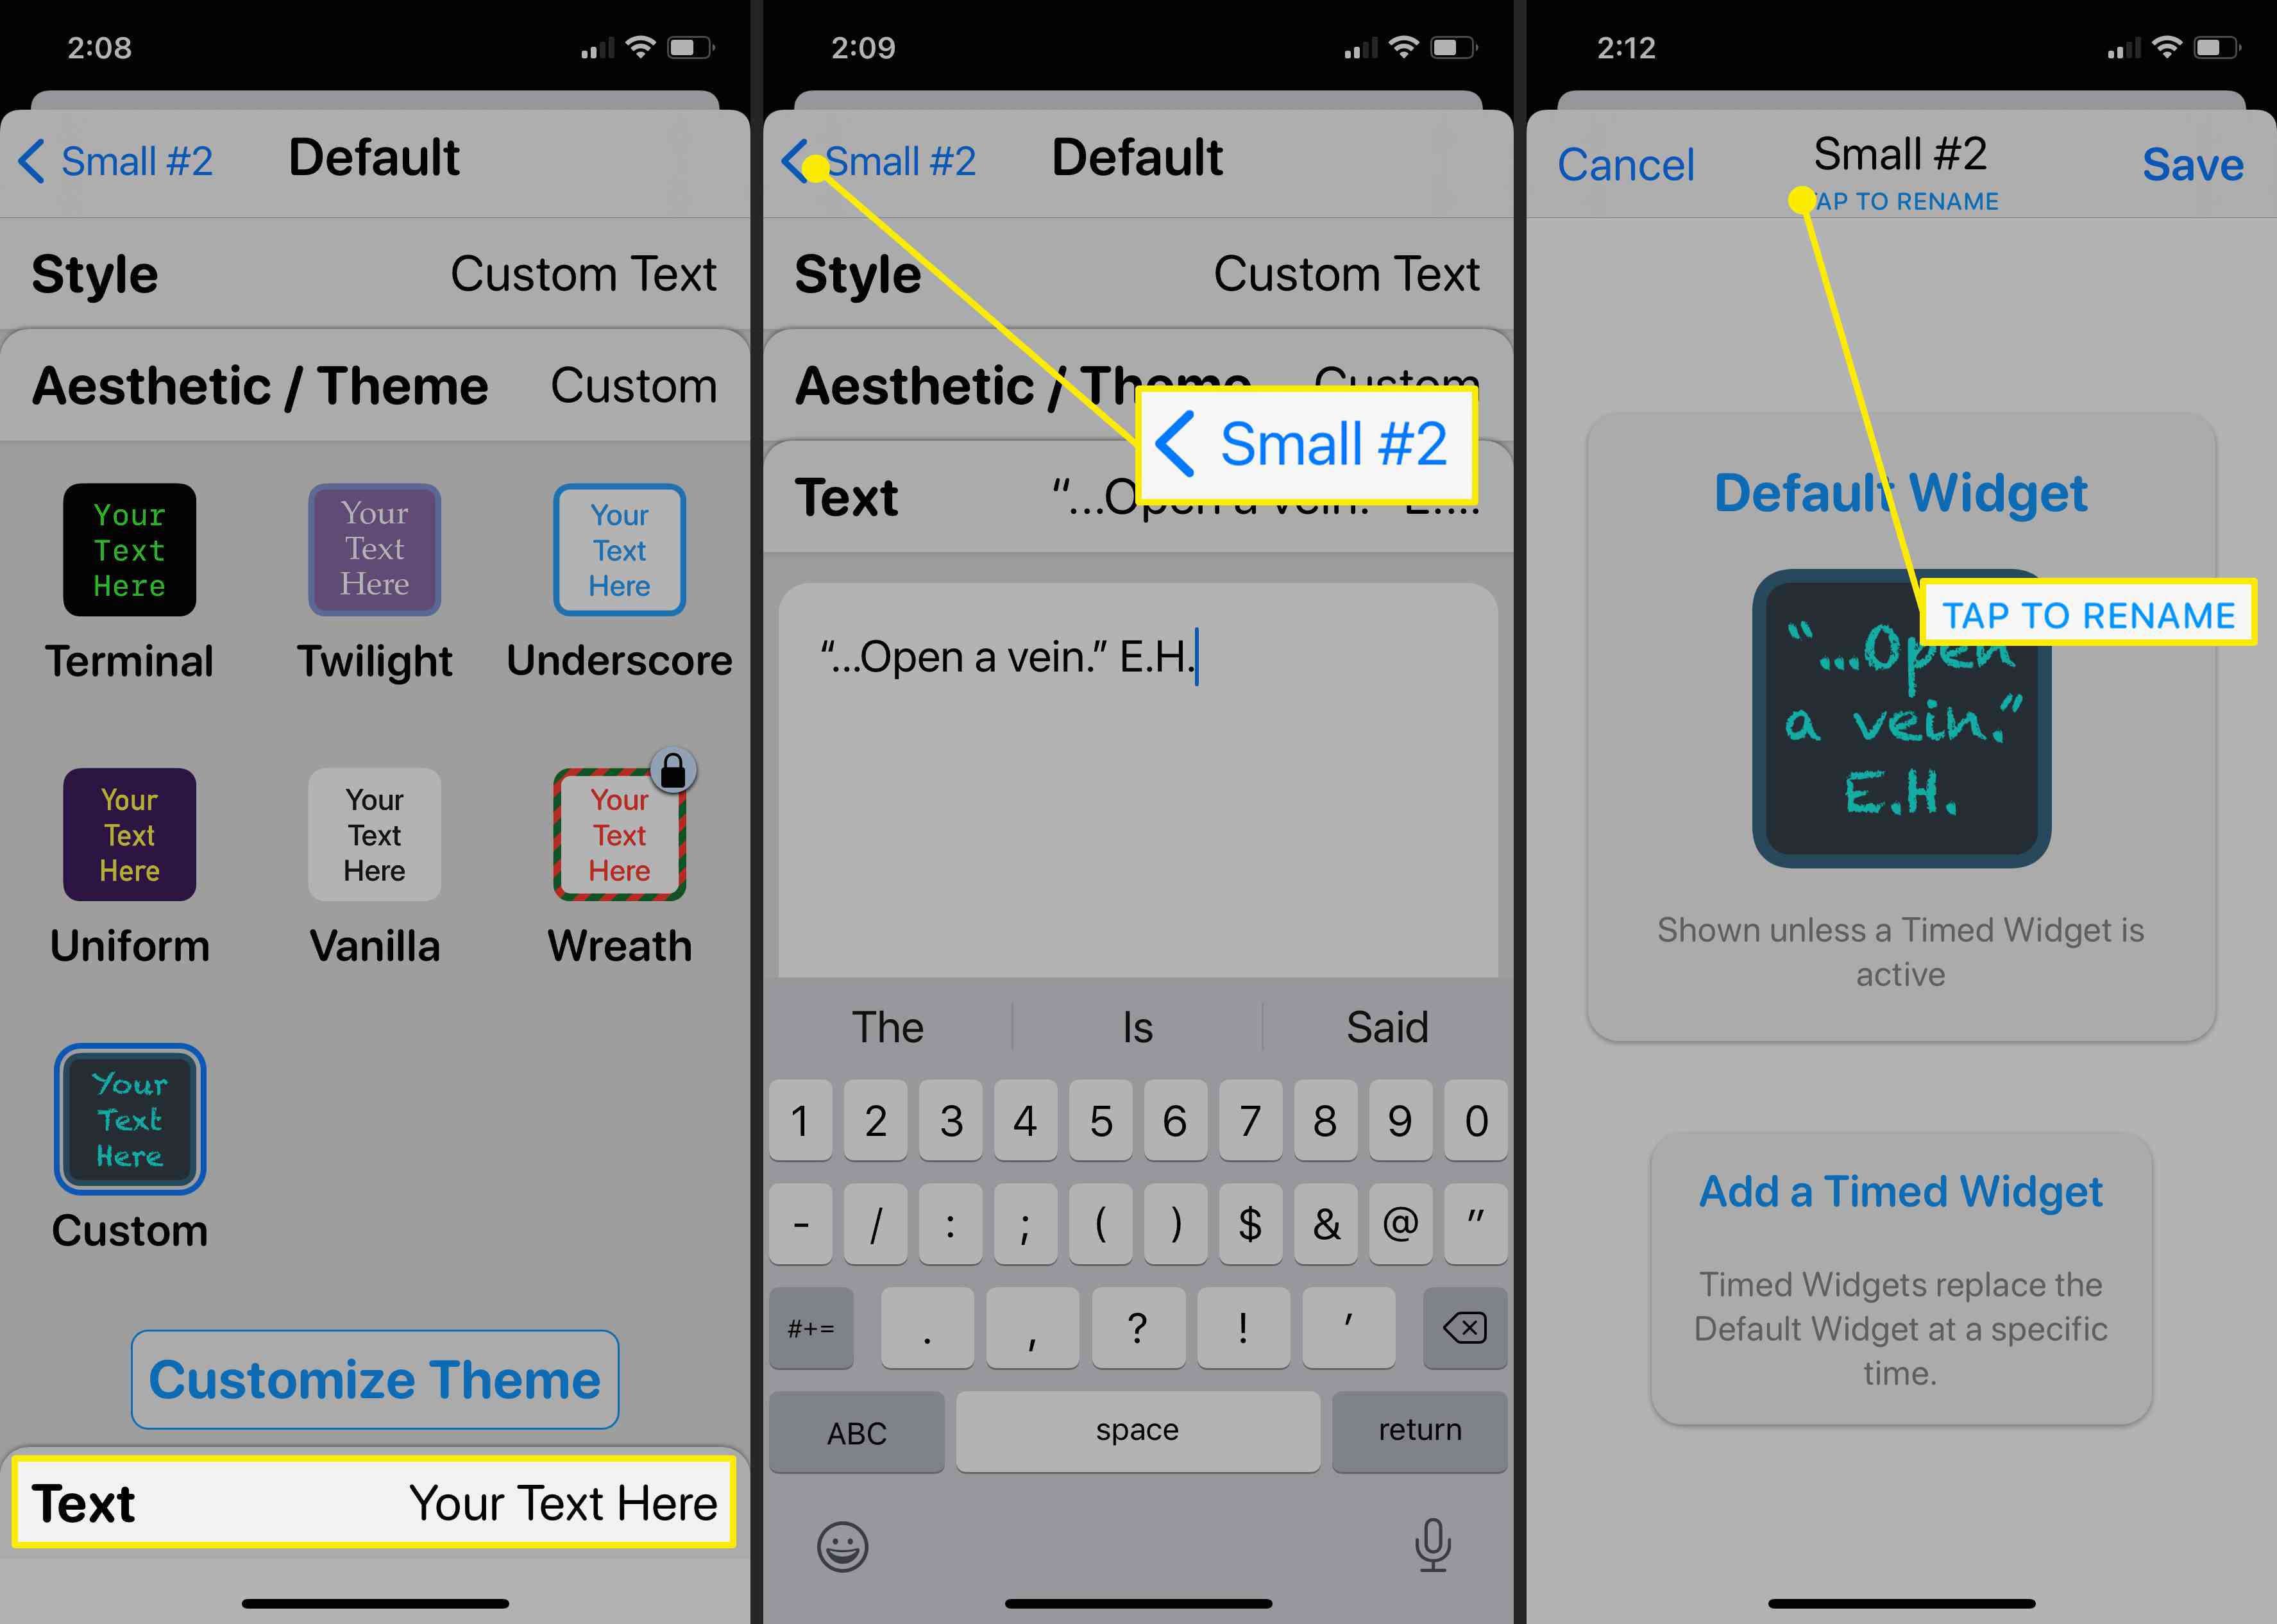 Capturas de tela da finalização de um widget de texto personalizado no aplicativo Widgetsmith.